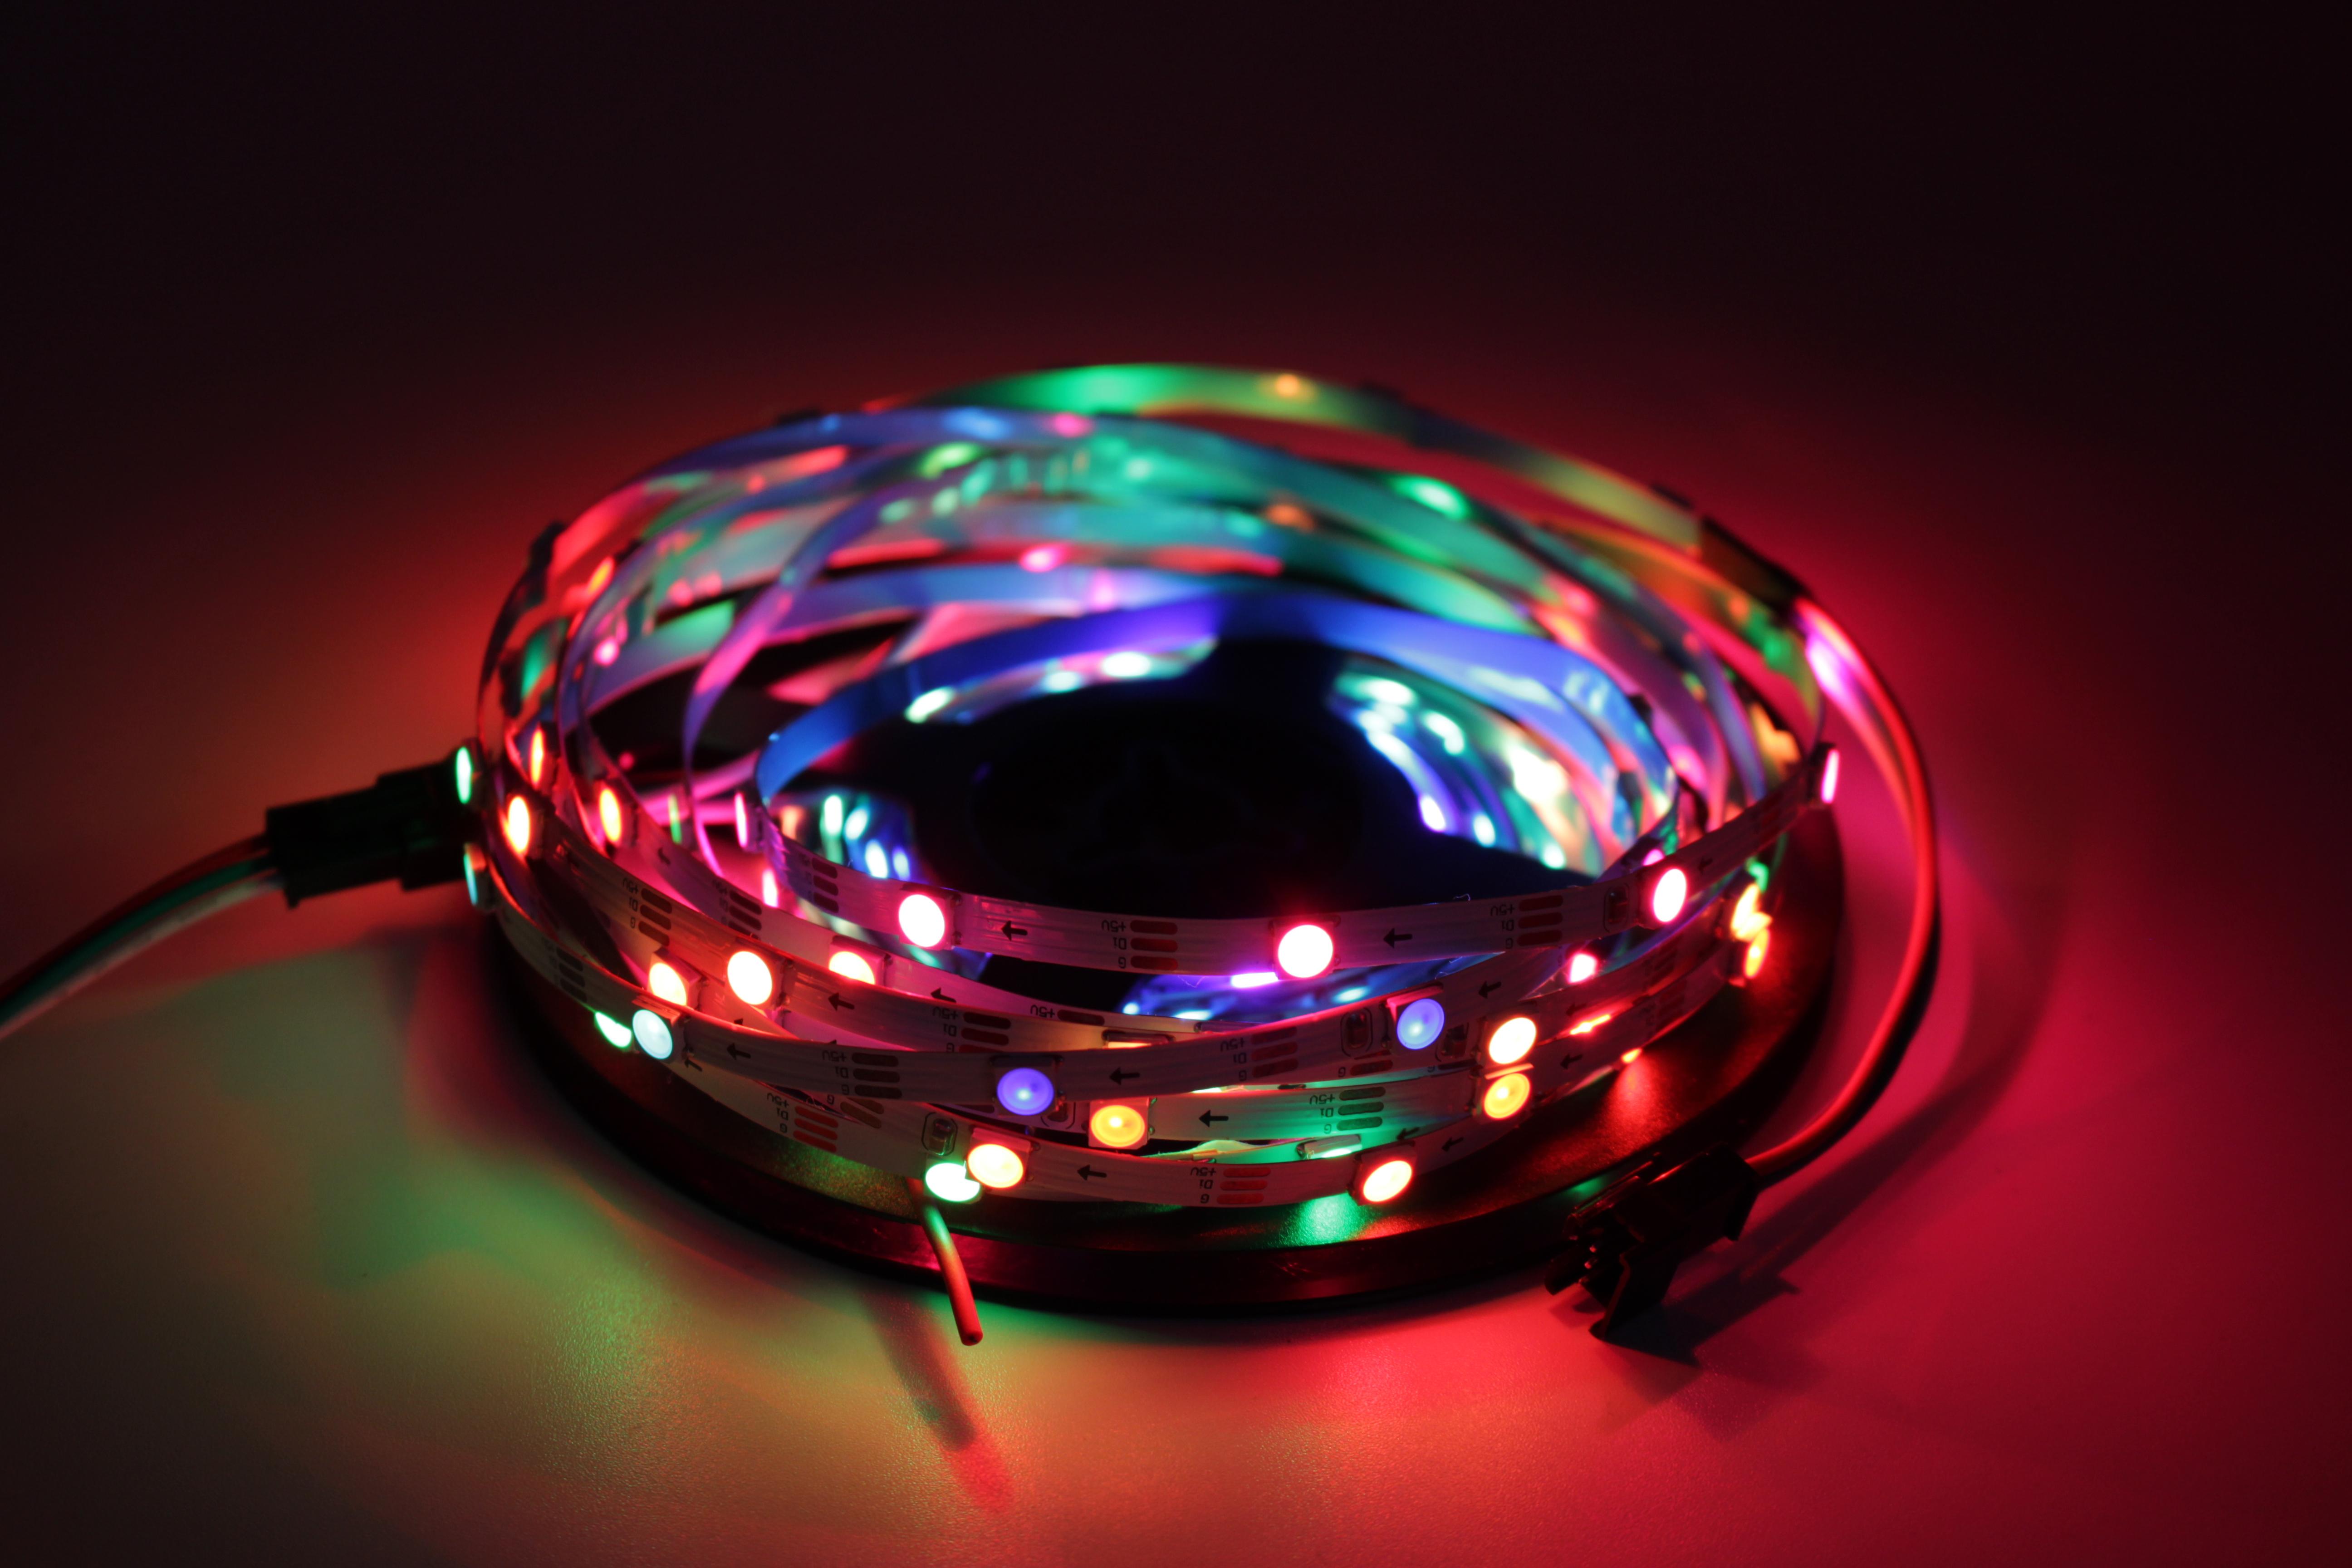 Изображение товара: Светодиодная ленсветильник WS2812B ws2812 5 мм 30 светодиодов/м, программируемая индивидуально модифицируемая цветная лампа RGB Dream, 30 пикселей/м, узкая ширина